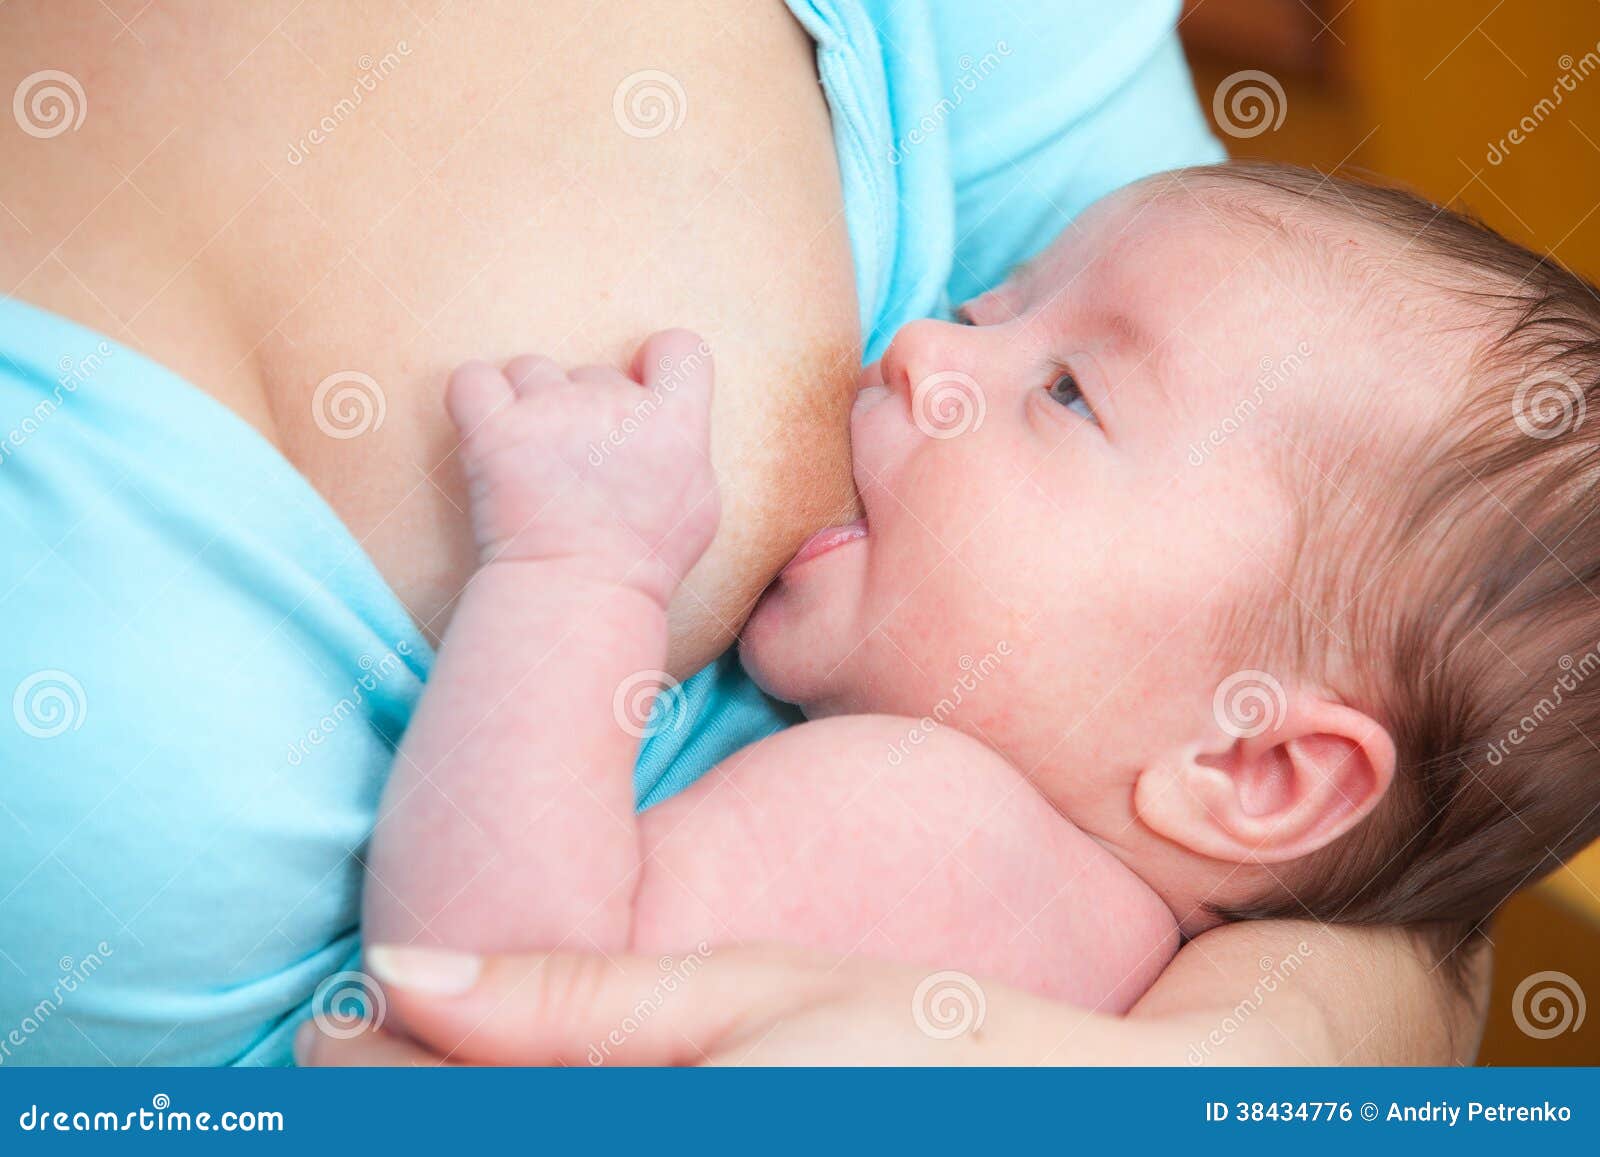 новорожденный сосет одну грудь фото 53